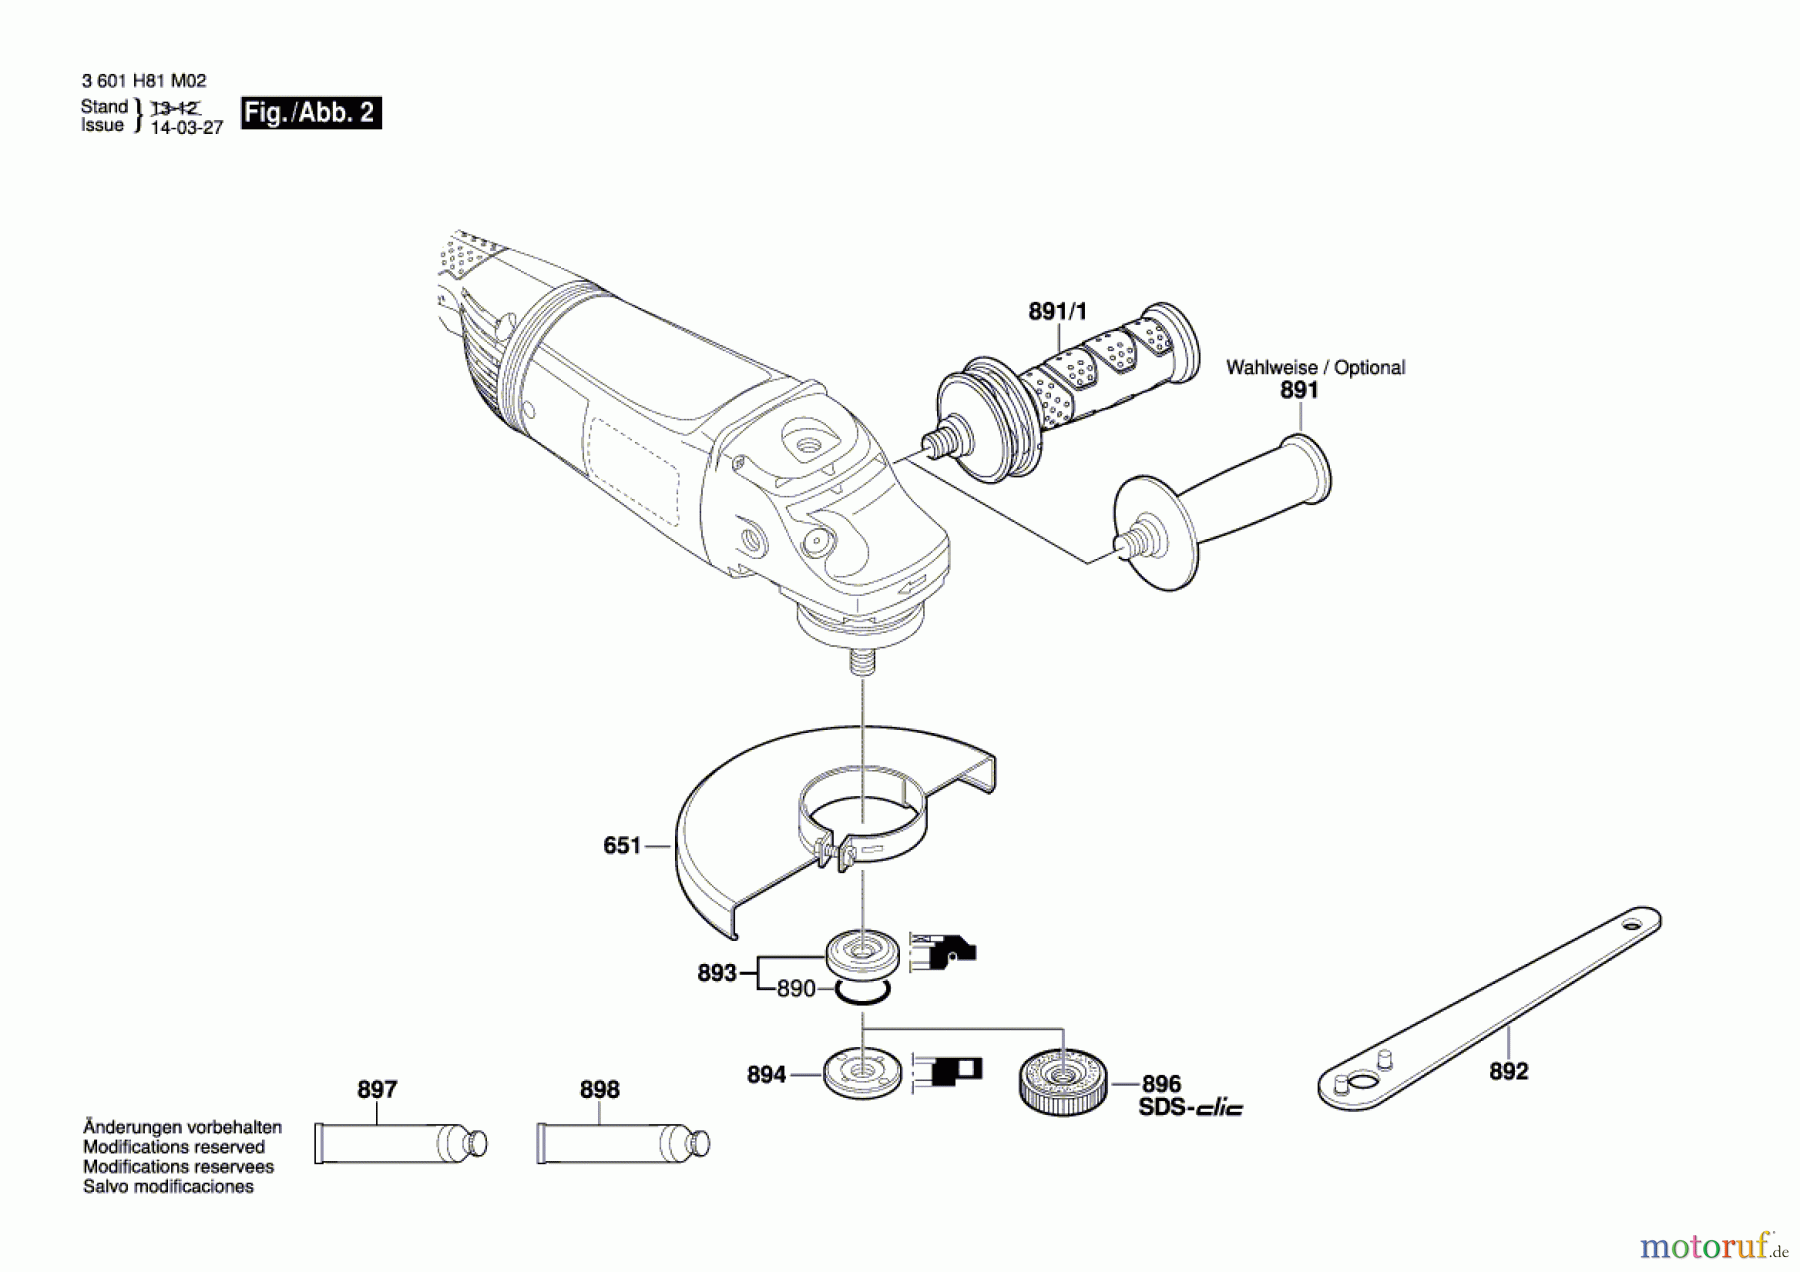  Bosch Werkzeug Winkelschleifer GWS 22-180 JH Seite 2